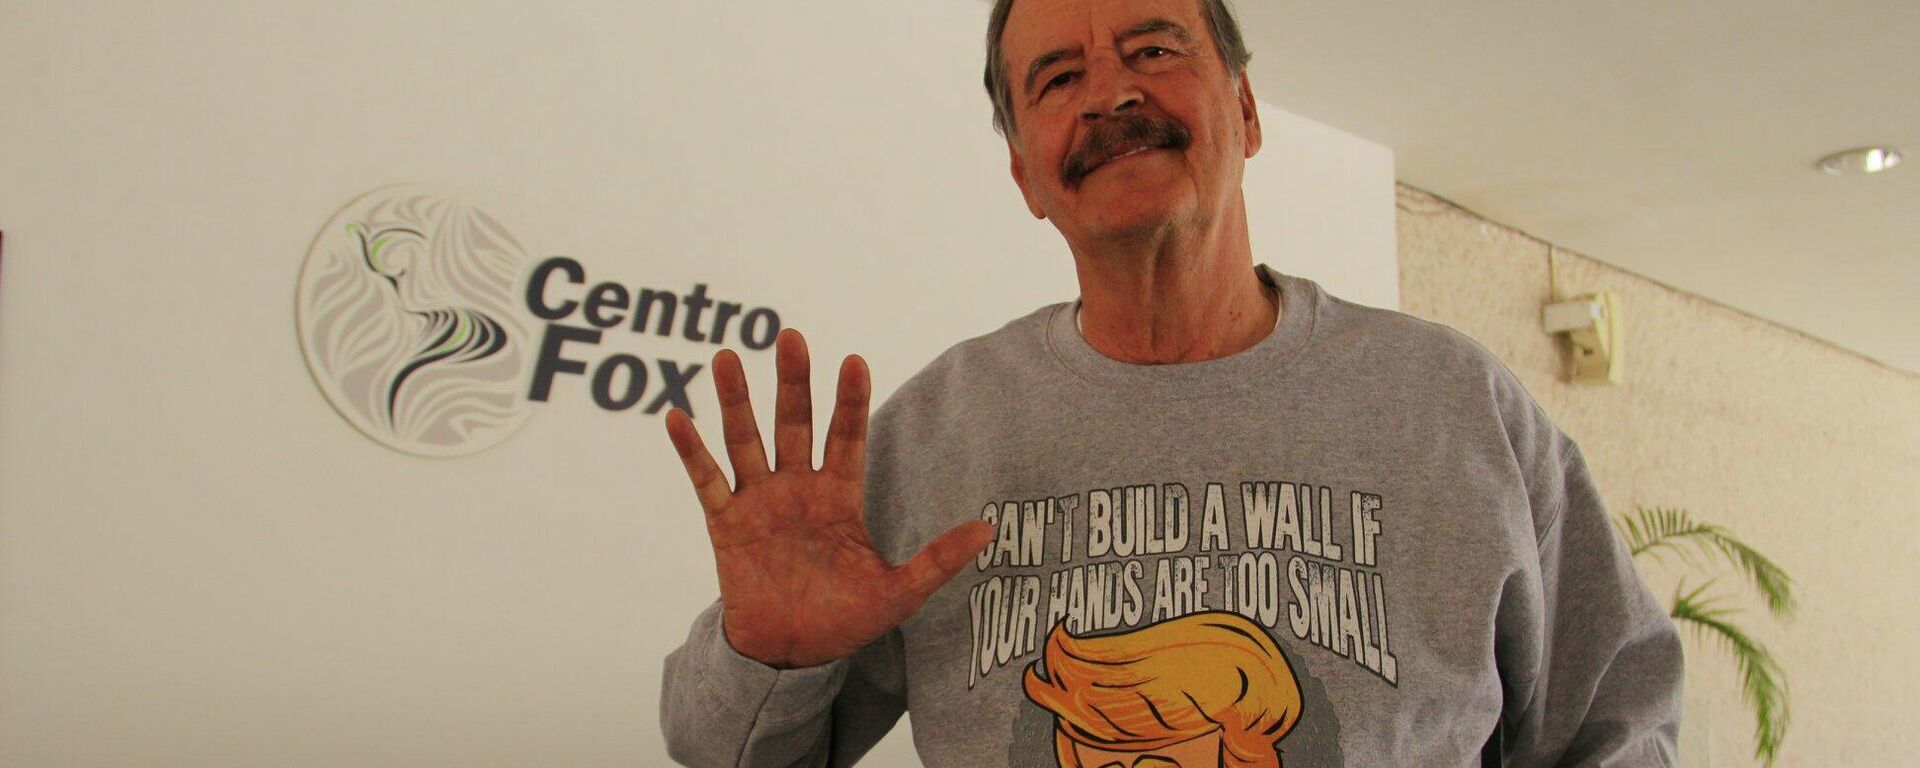 Vicente Fox, expresidente de México - Sputnik Mundo, 1920, 02.05.2022